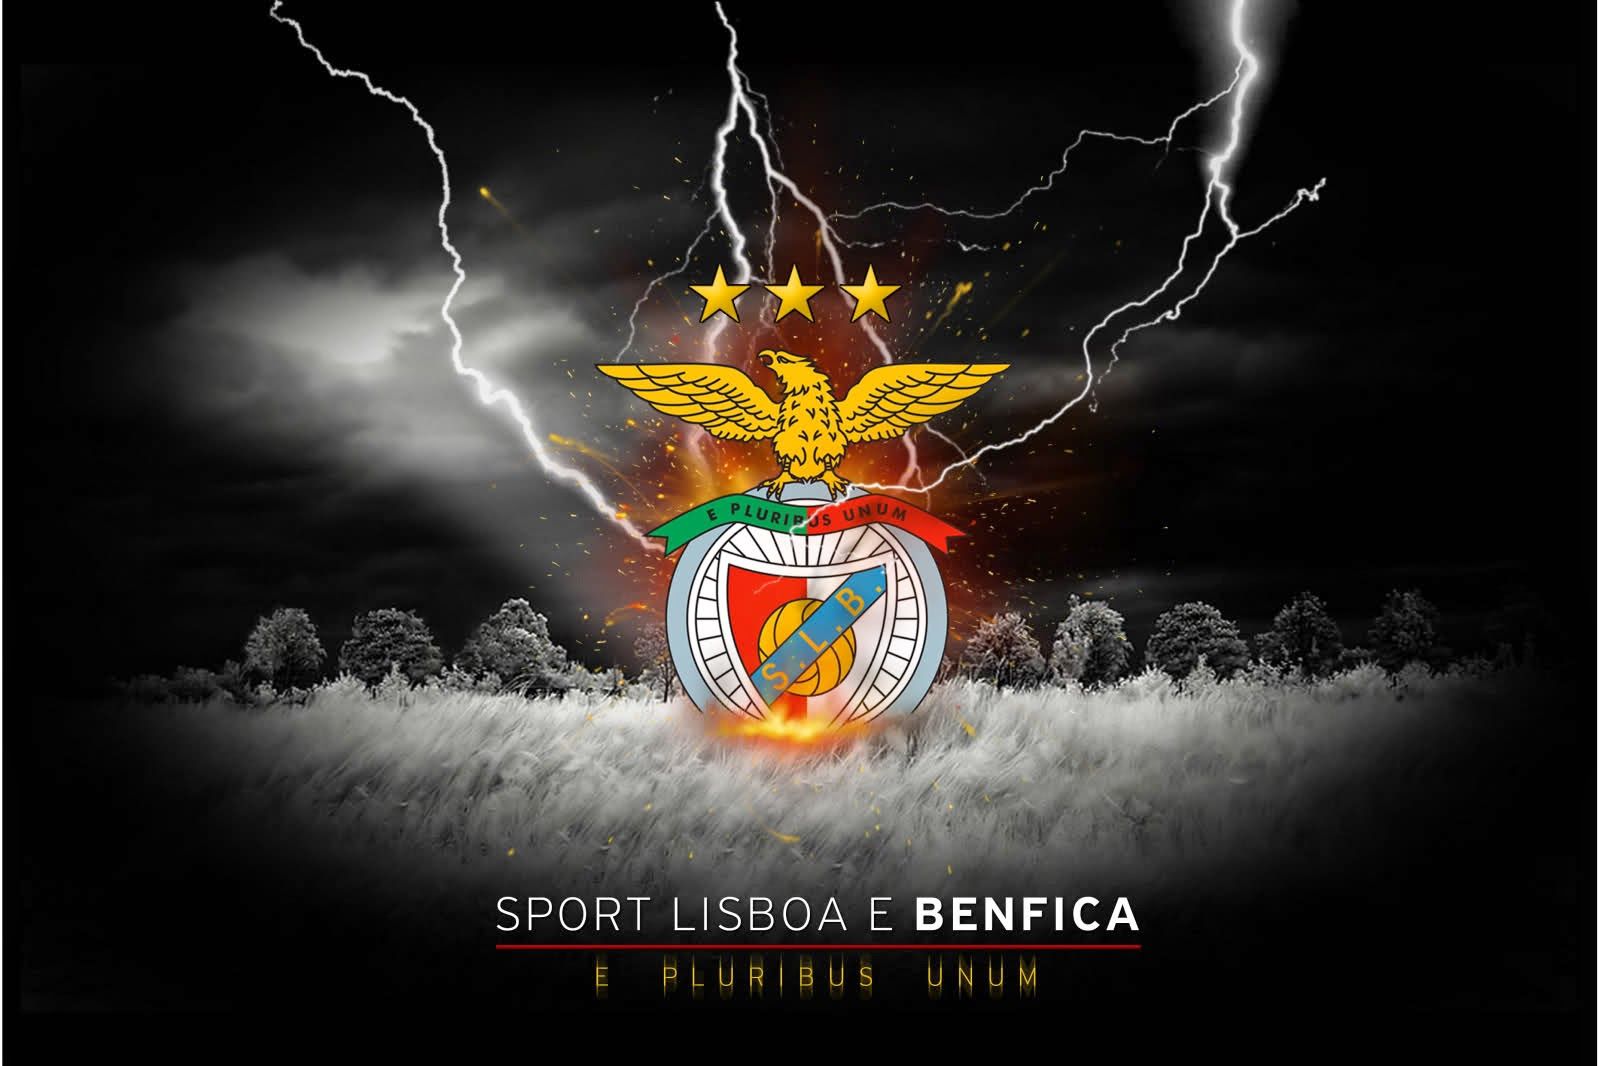 Benfica Wallpaper. SL Benfica Wallpaper, Portugal Benfica Wallpaper and Benfica Wallpaper